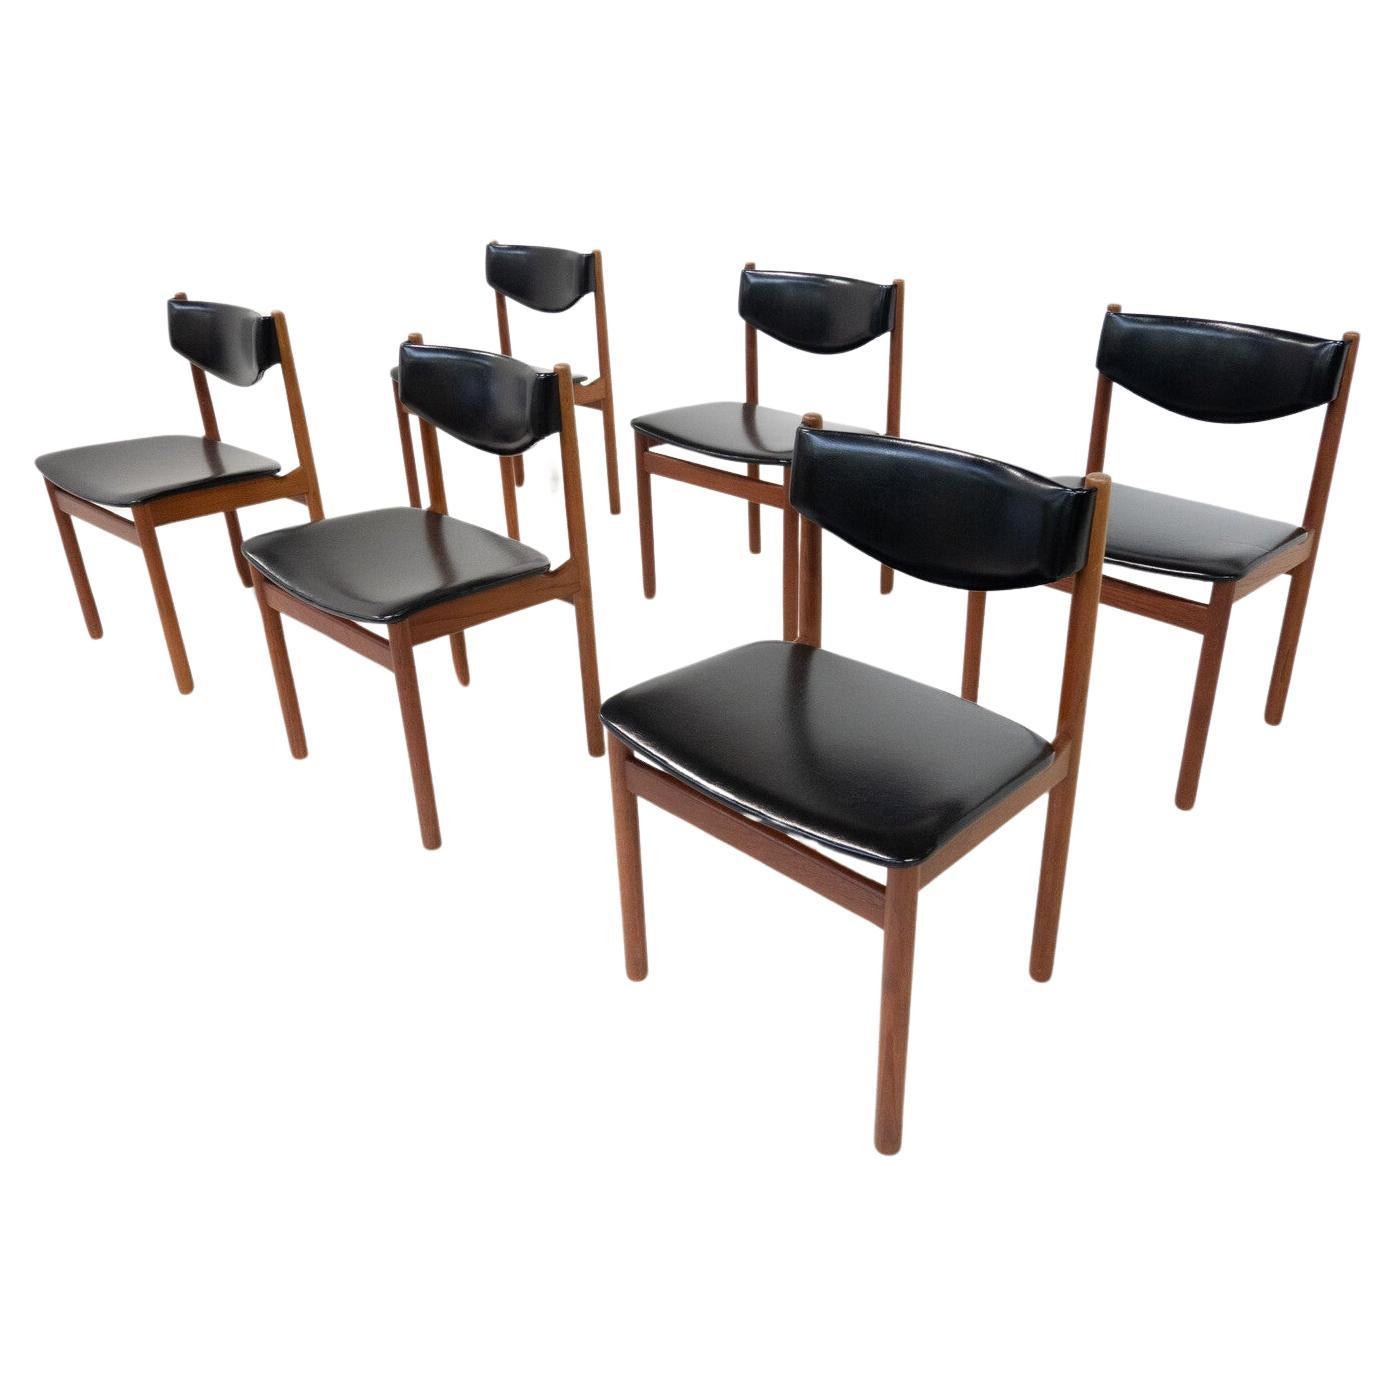 The Moderns Modern Set of 6 Scandinavian Chairs, 1960s